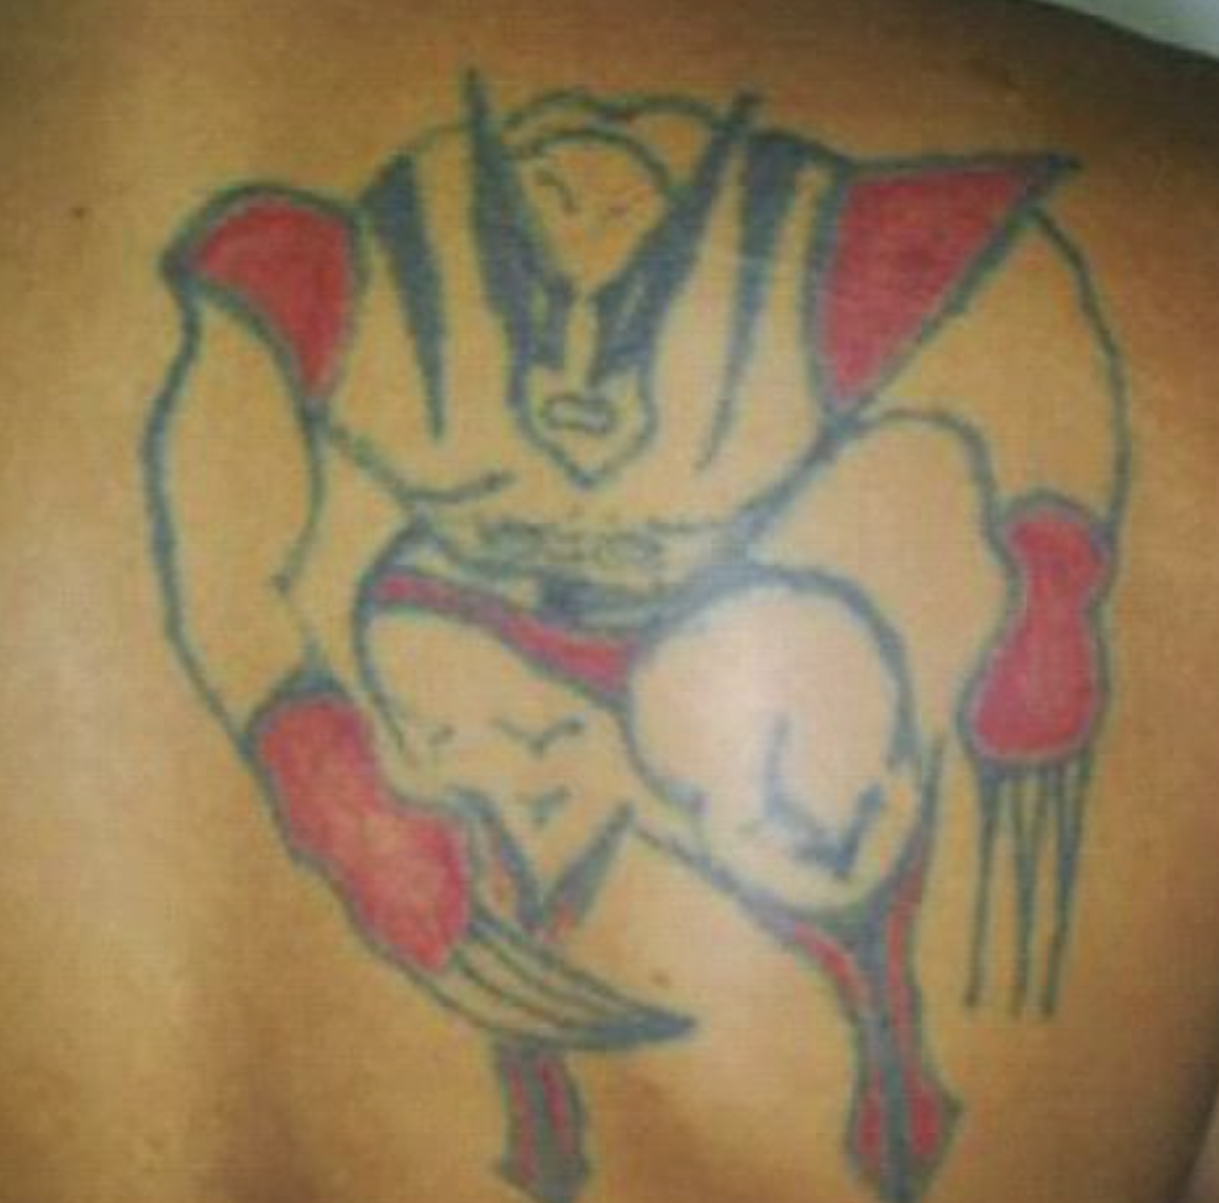 Bad Tattoos - fail tattoo